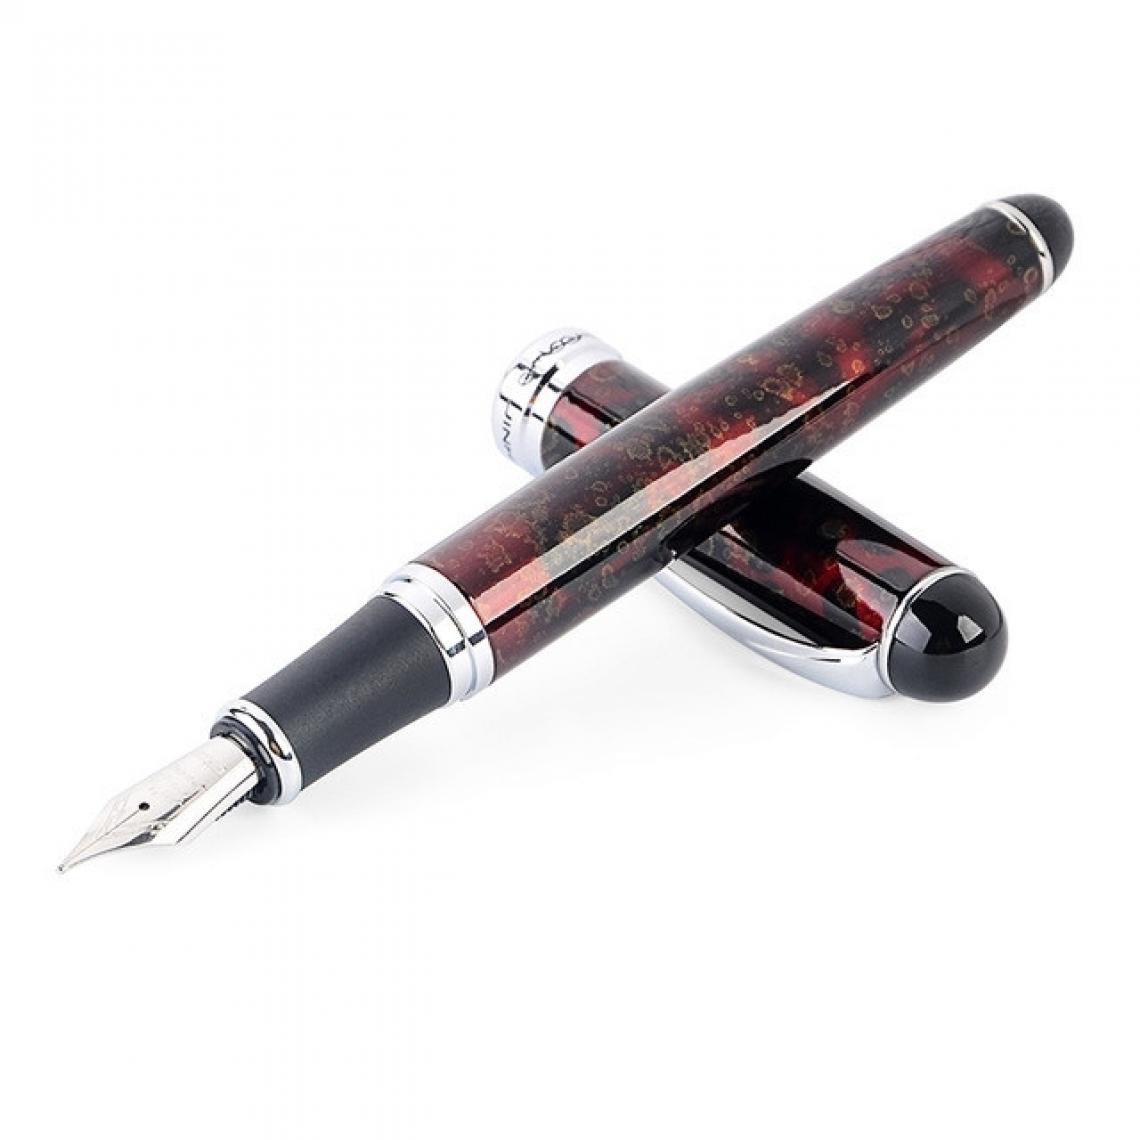 Wewoo - X750 papeterie stylo-plume en acier inoxydable plume moyenne stylos encre cadeau école cadeautaille 1.0mm motif rouge - Accessoires Bureau